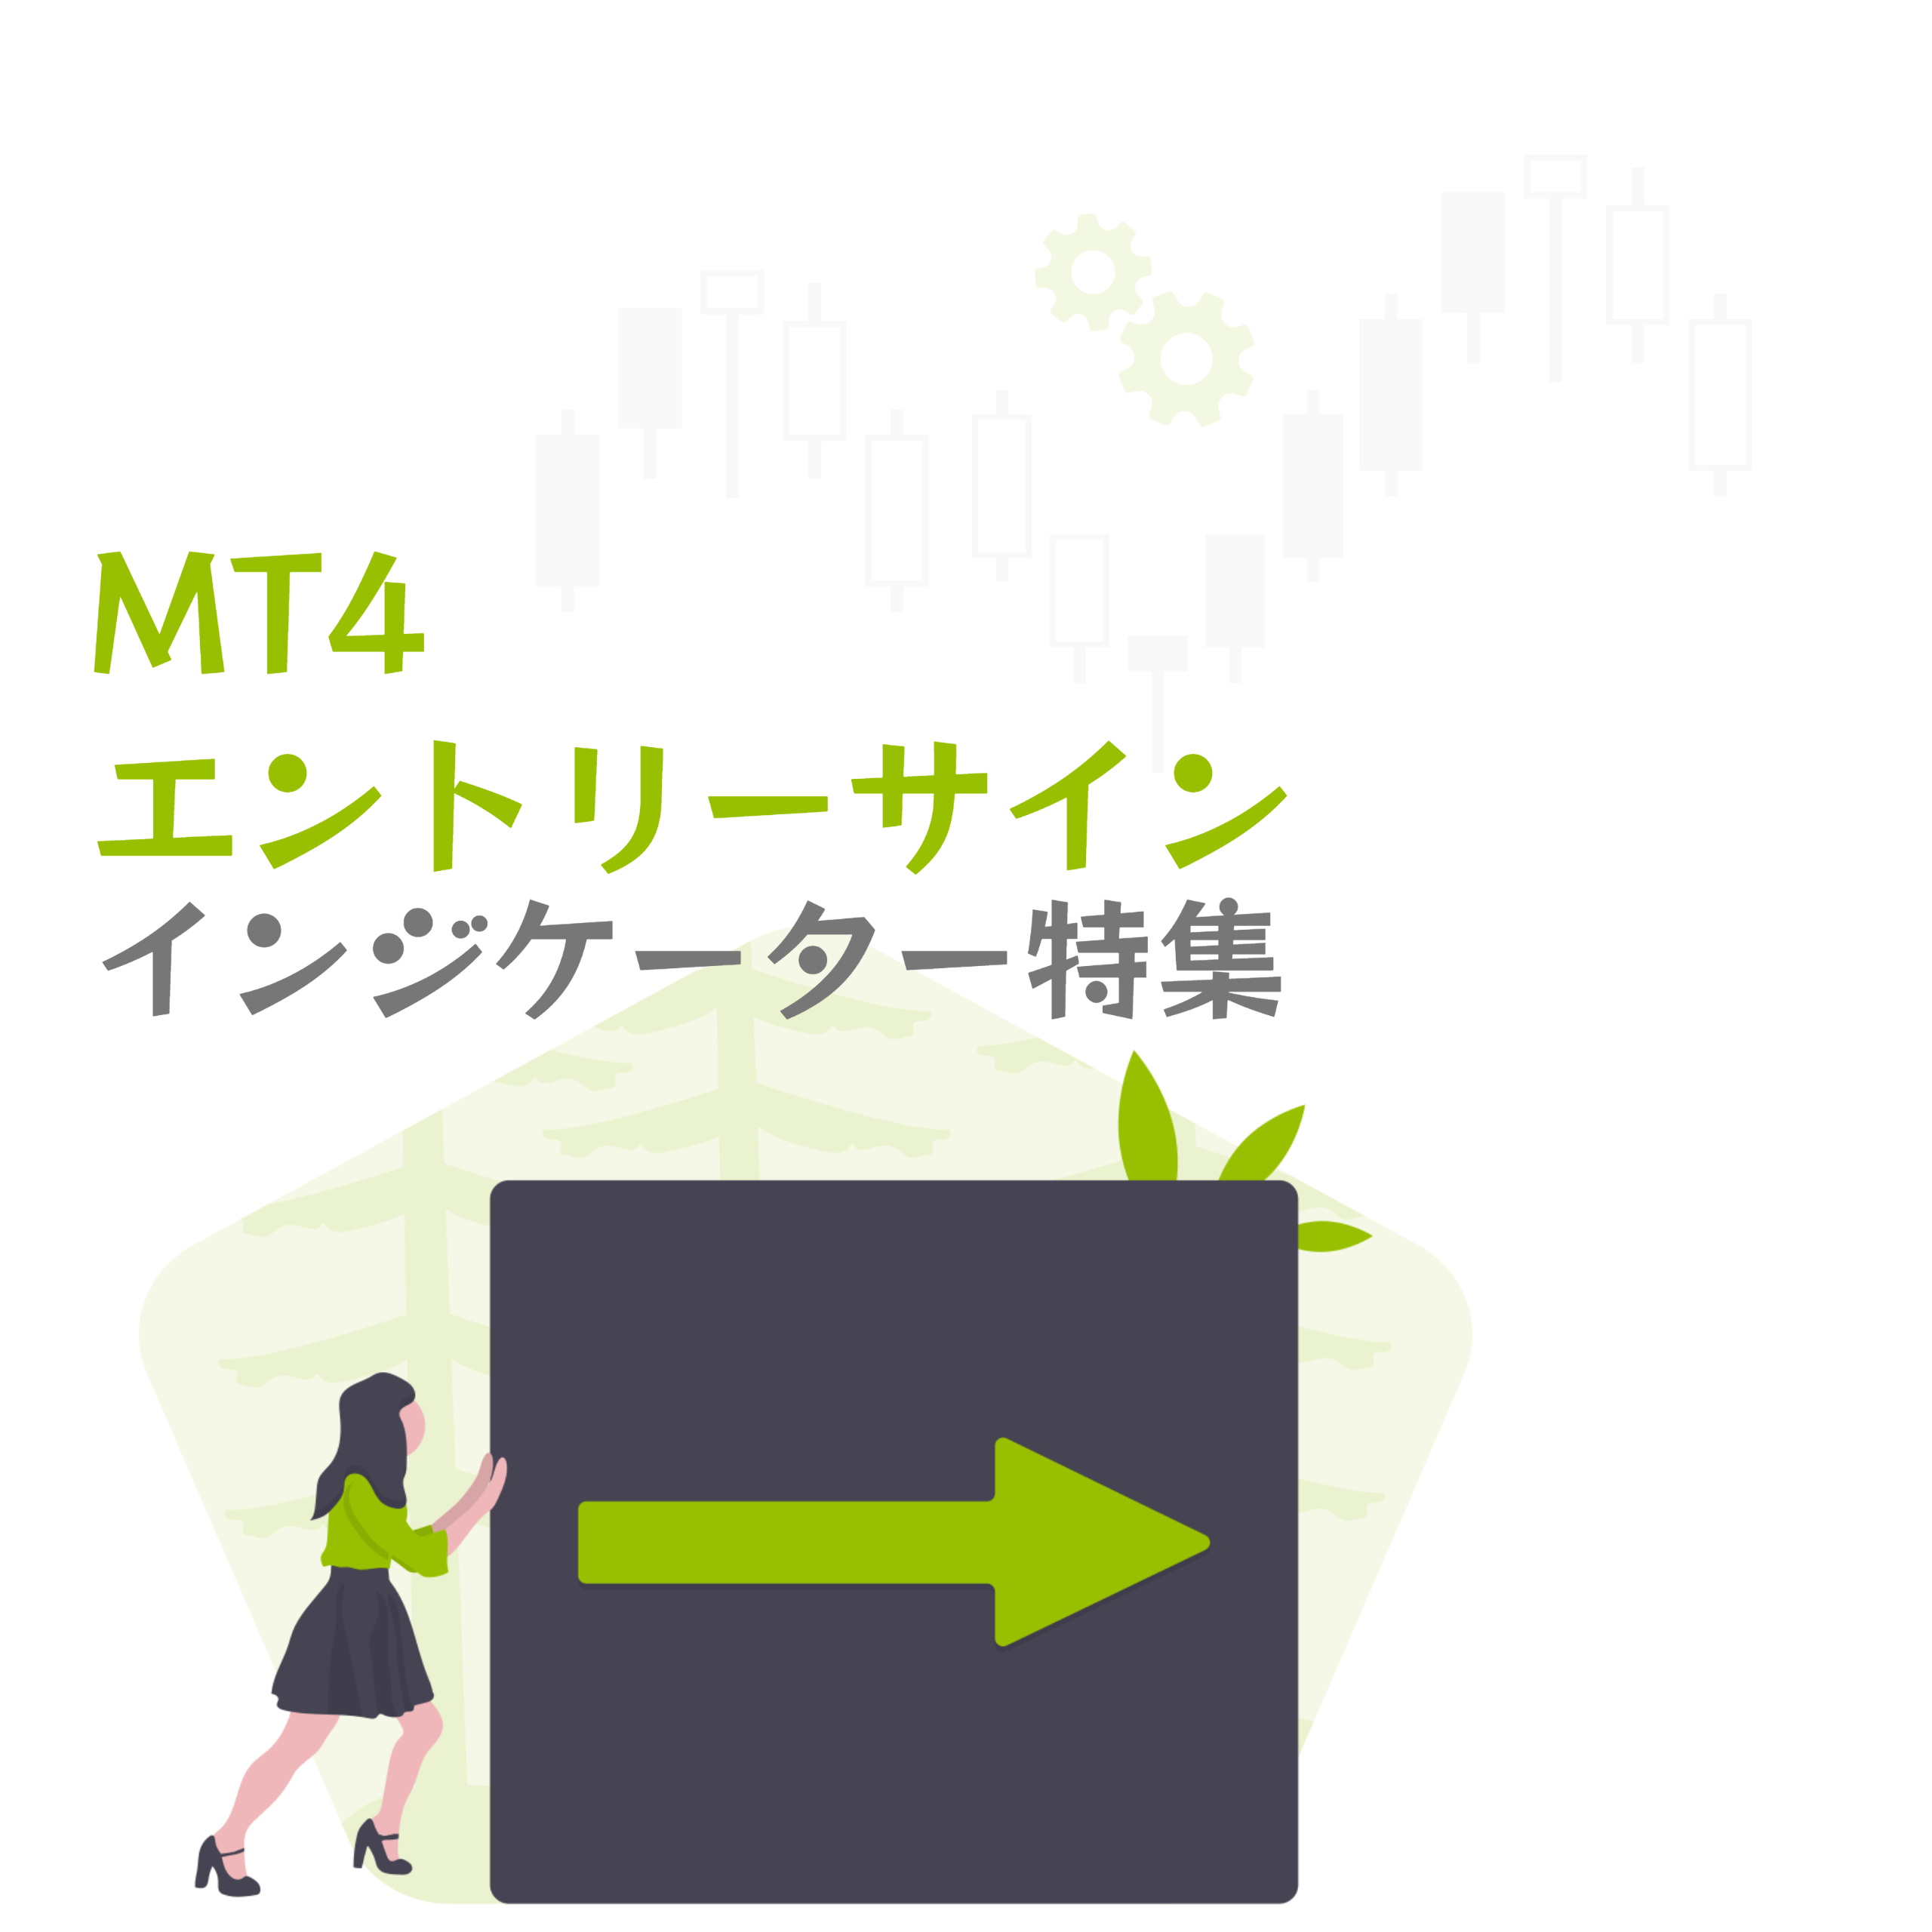 MT4エントリーサインインジケーター特集アイキャッチ